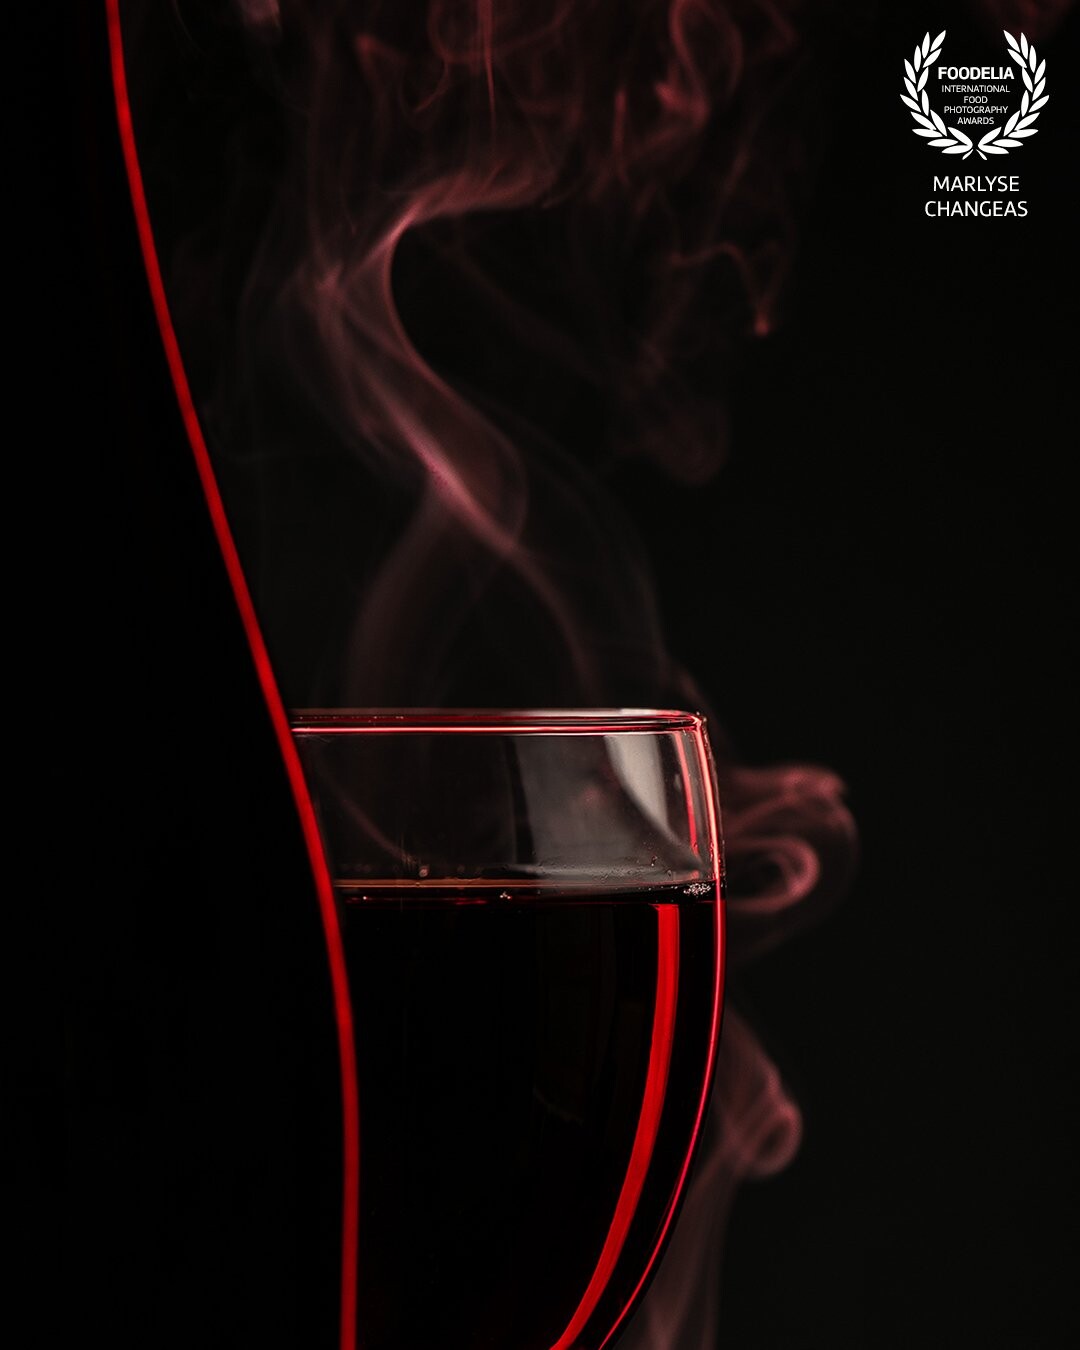 La couleur rouge représente bien la couleur du vin. La lumière rouge met en valeur le mouvement de la fumée et la silhouette du verre de vin. La bouteille à une ligne rouge subtil et légère.